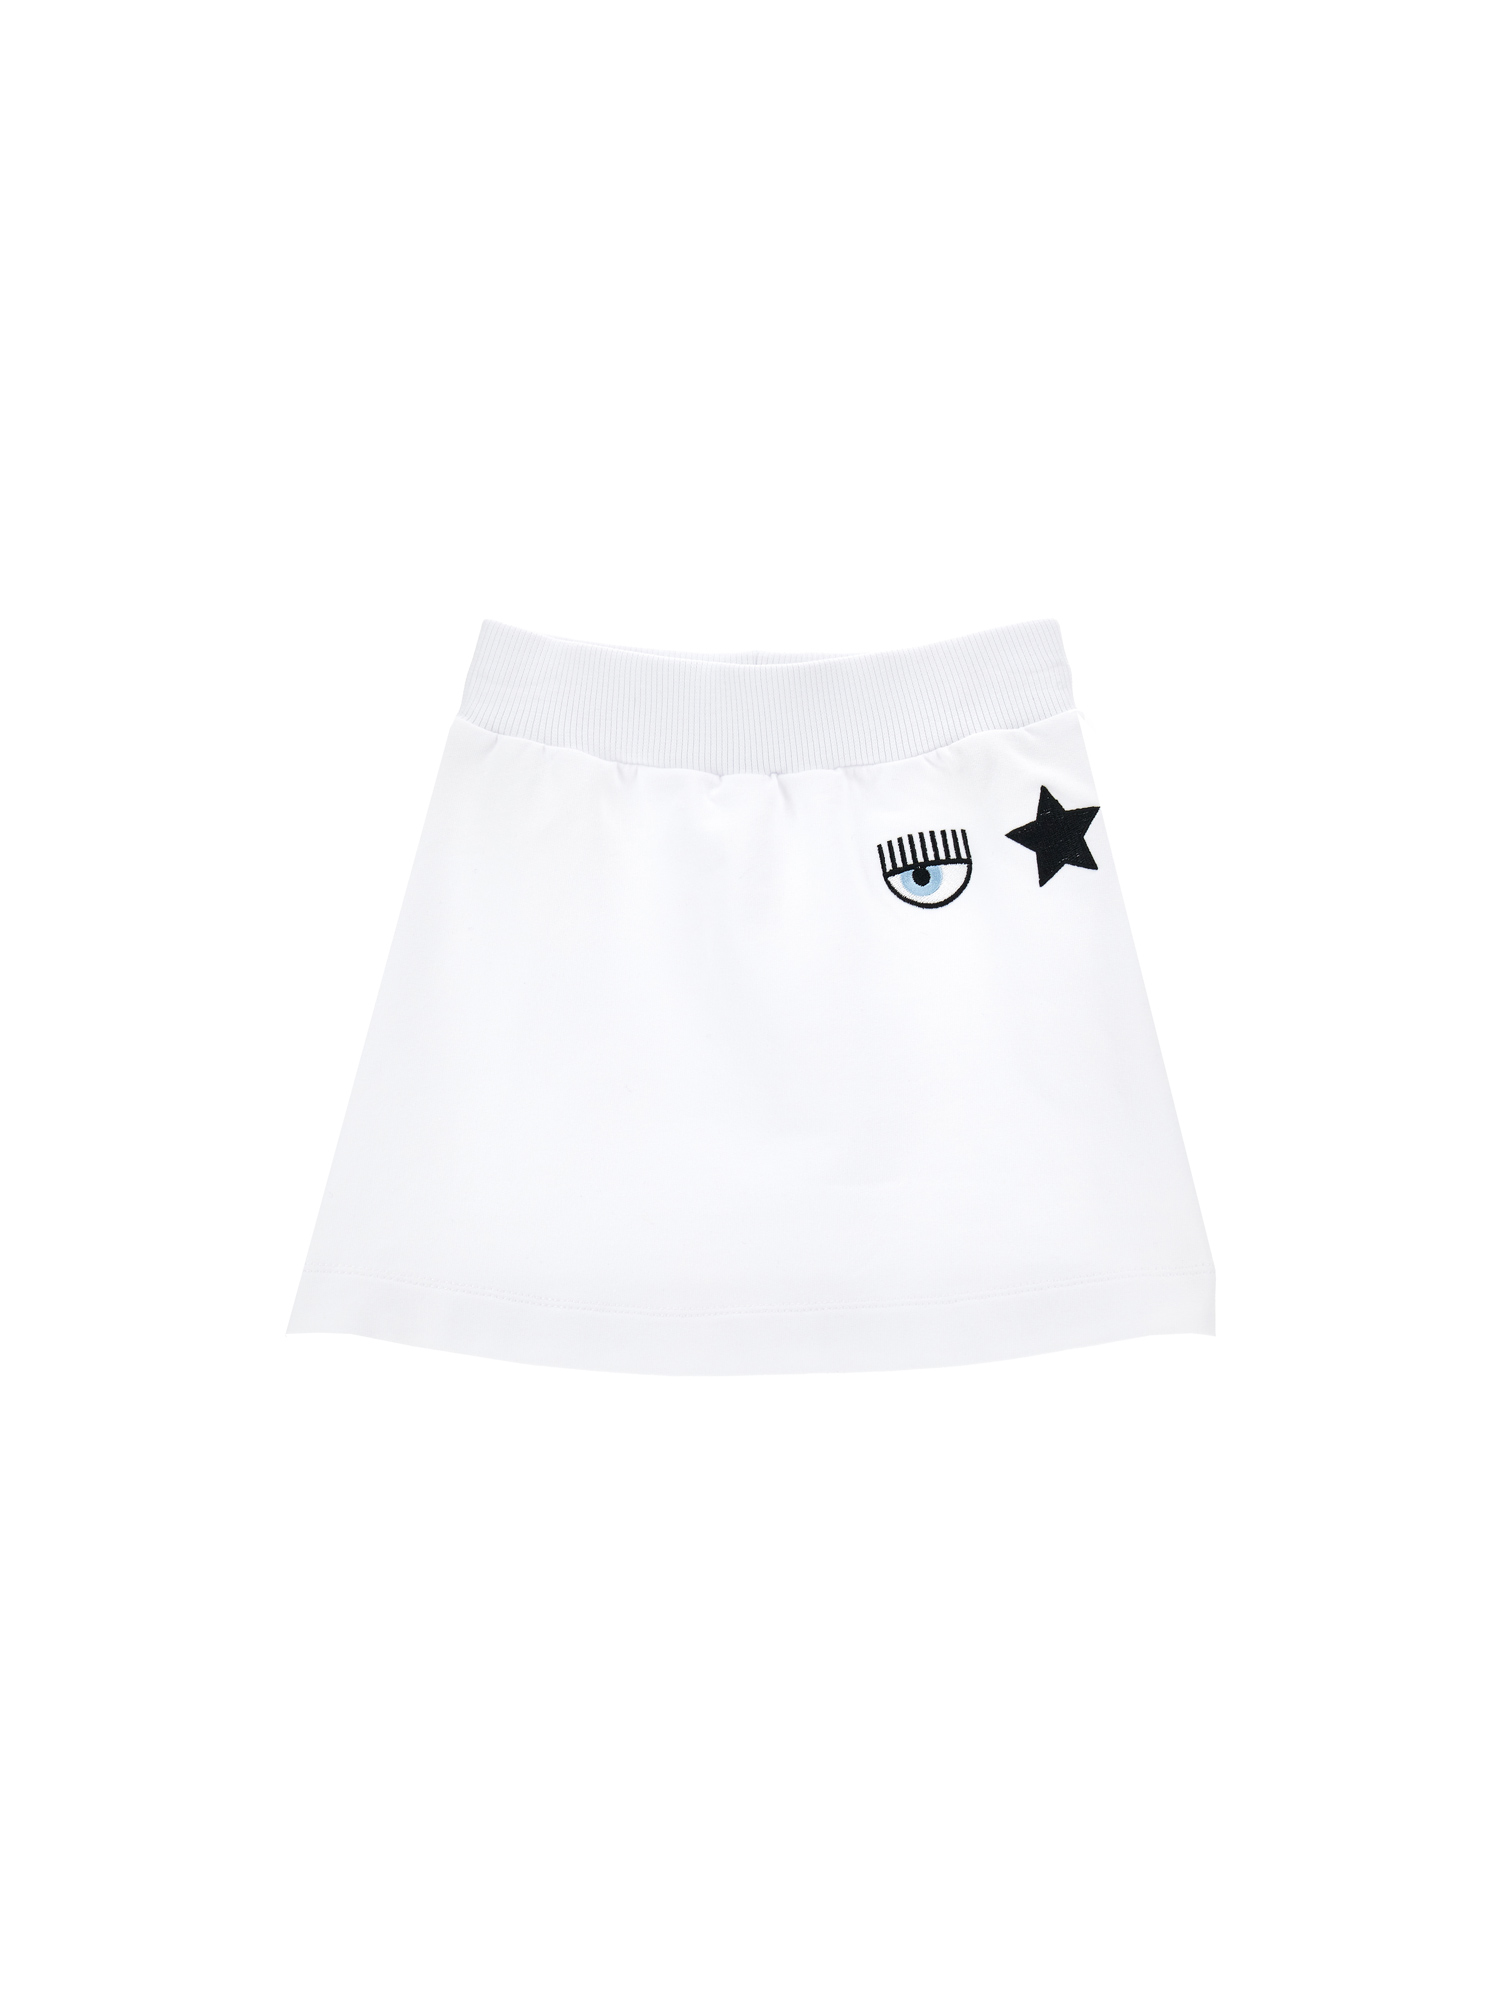 Chiara Ferragni Eyestar Skirt In White